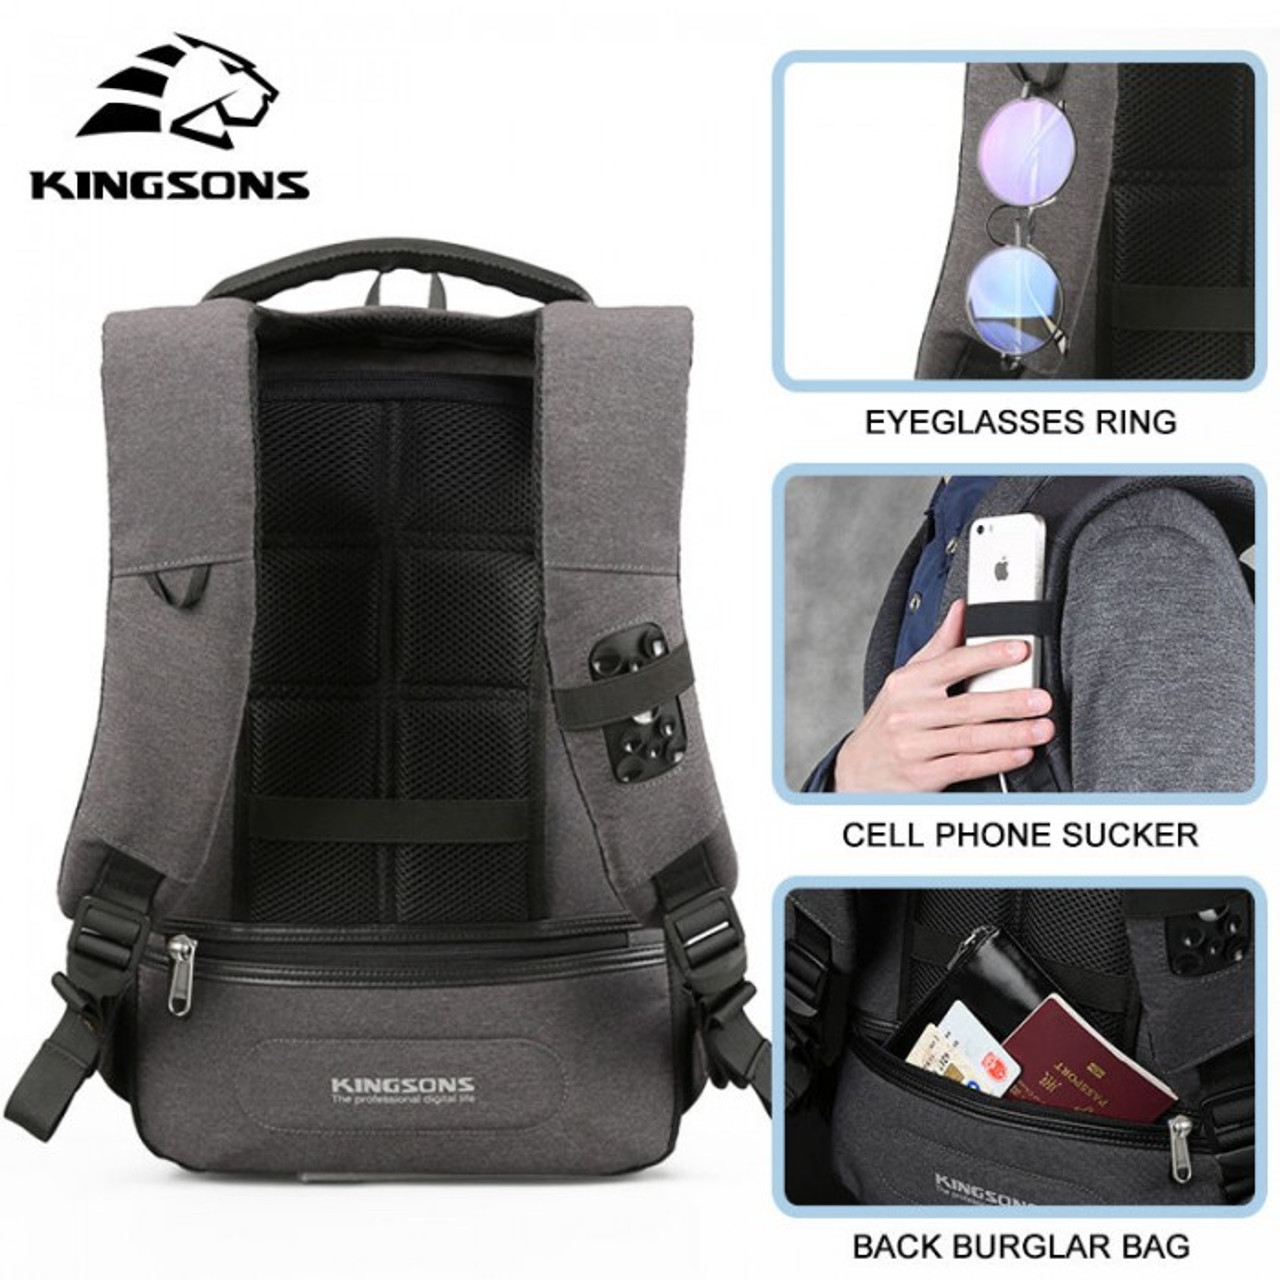 kingsons kingston backpack